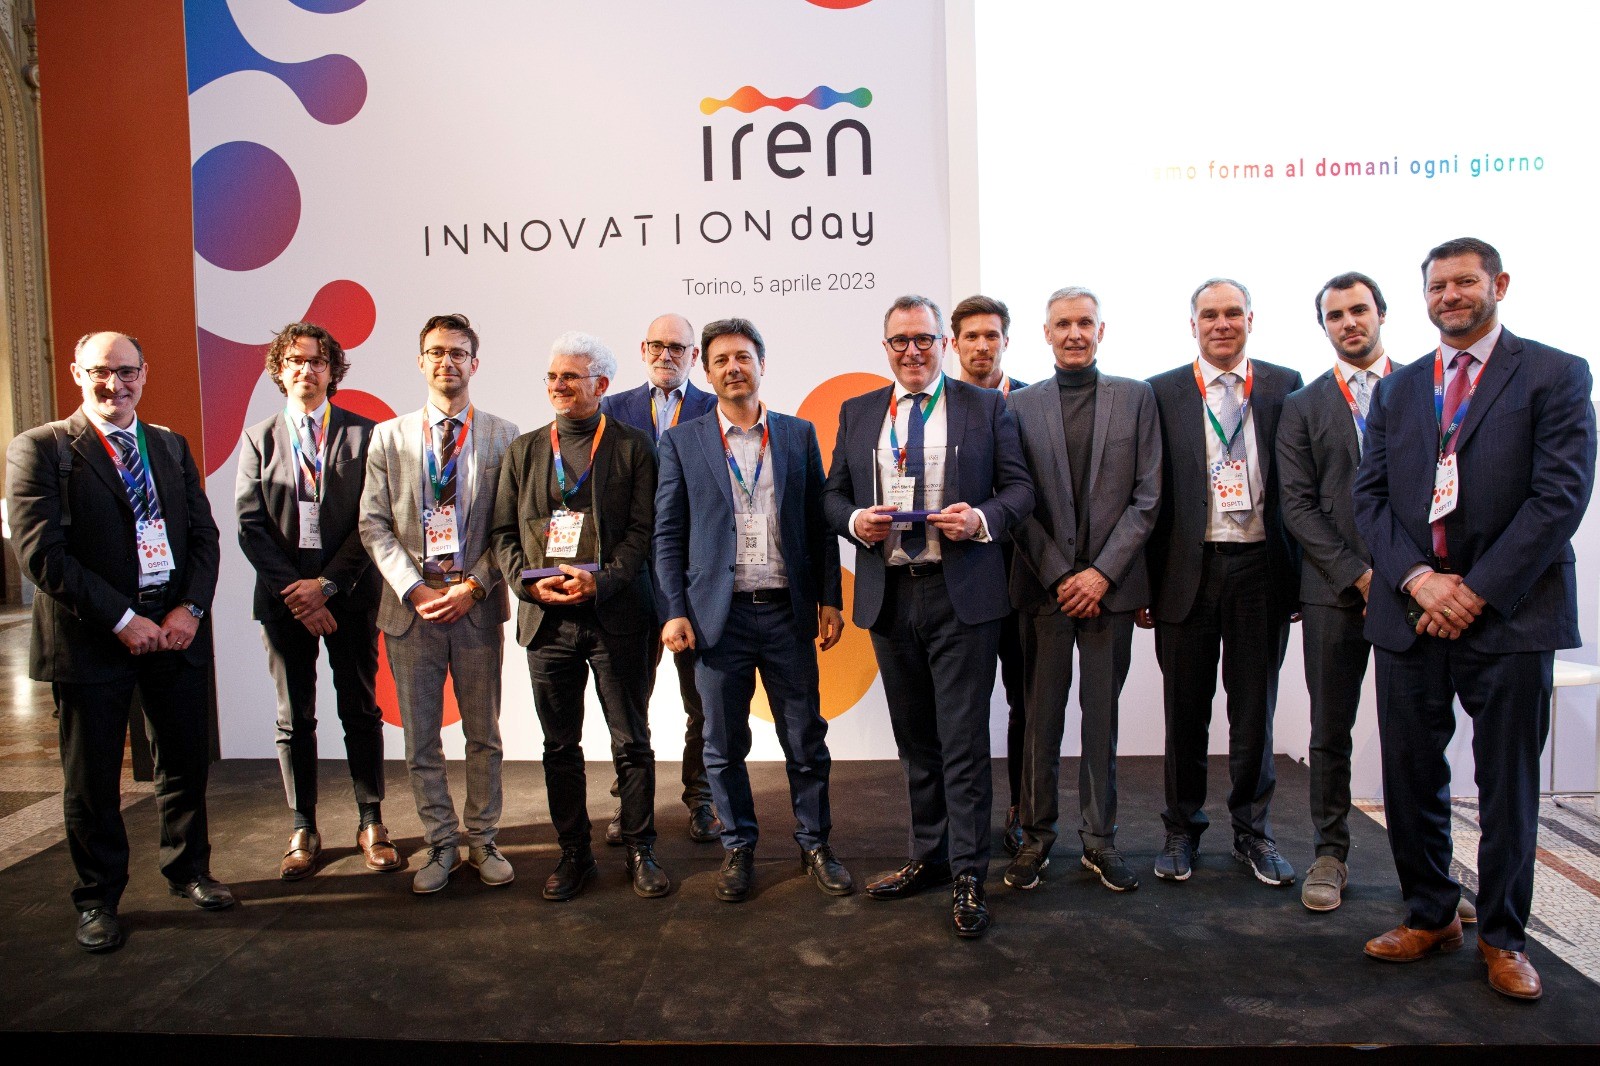 iren-startup-award:-oltre-100-startup-per-l'economia-circolare